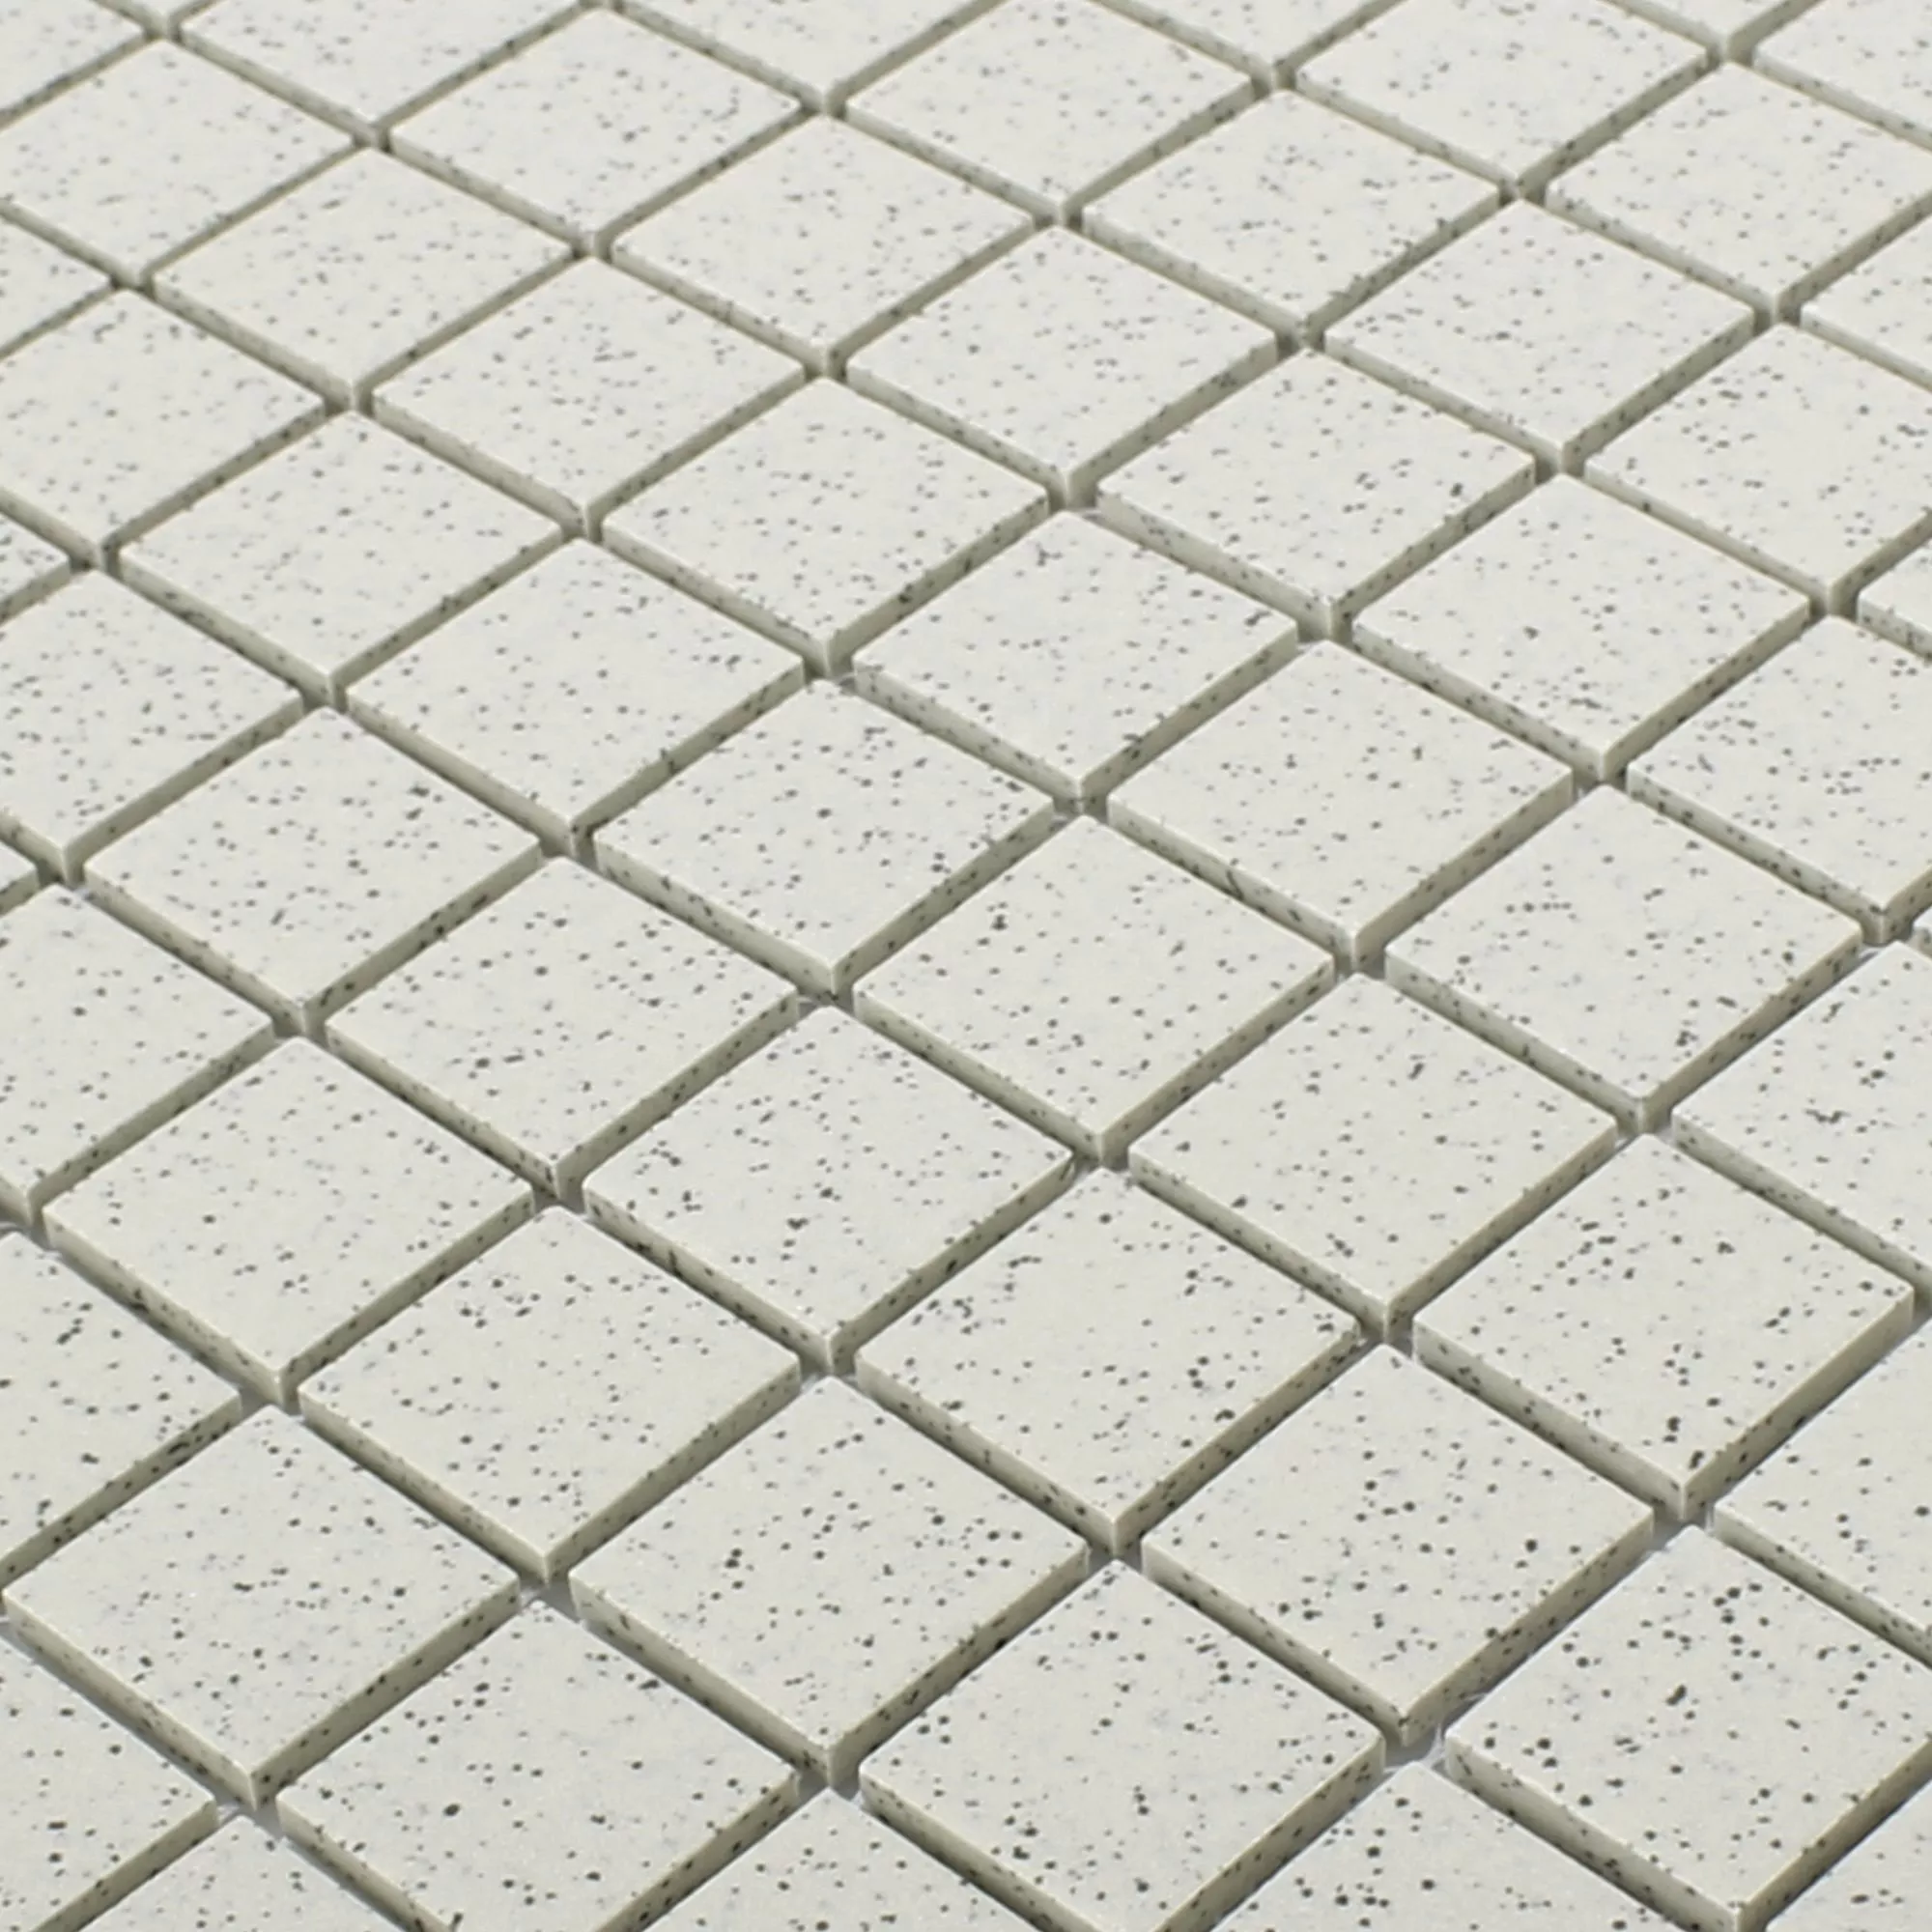 Sample Ceramic Mosaic Tiles Luanda Beige Square